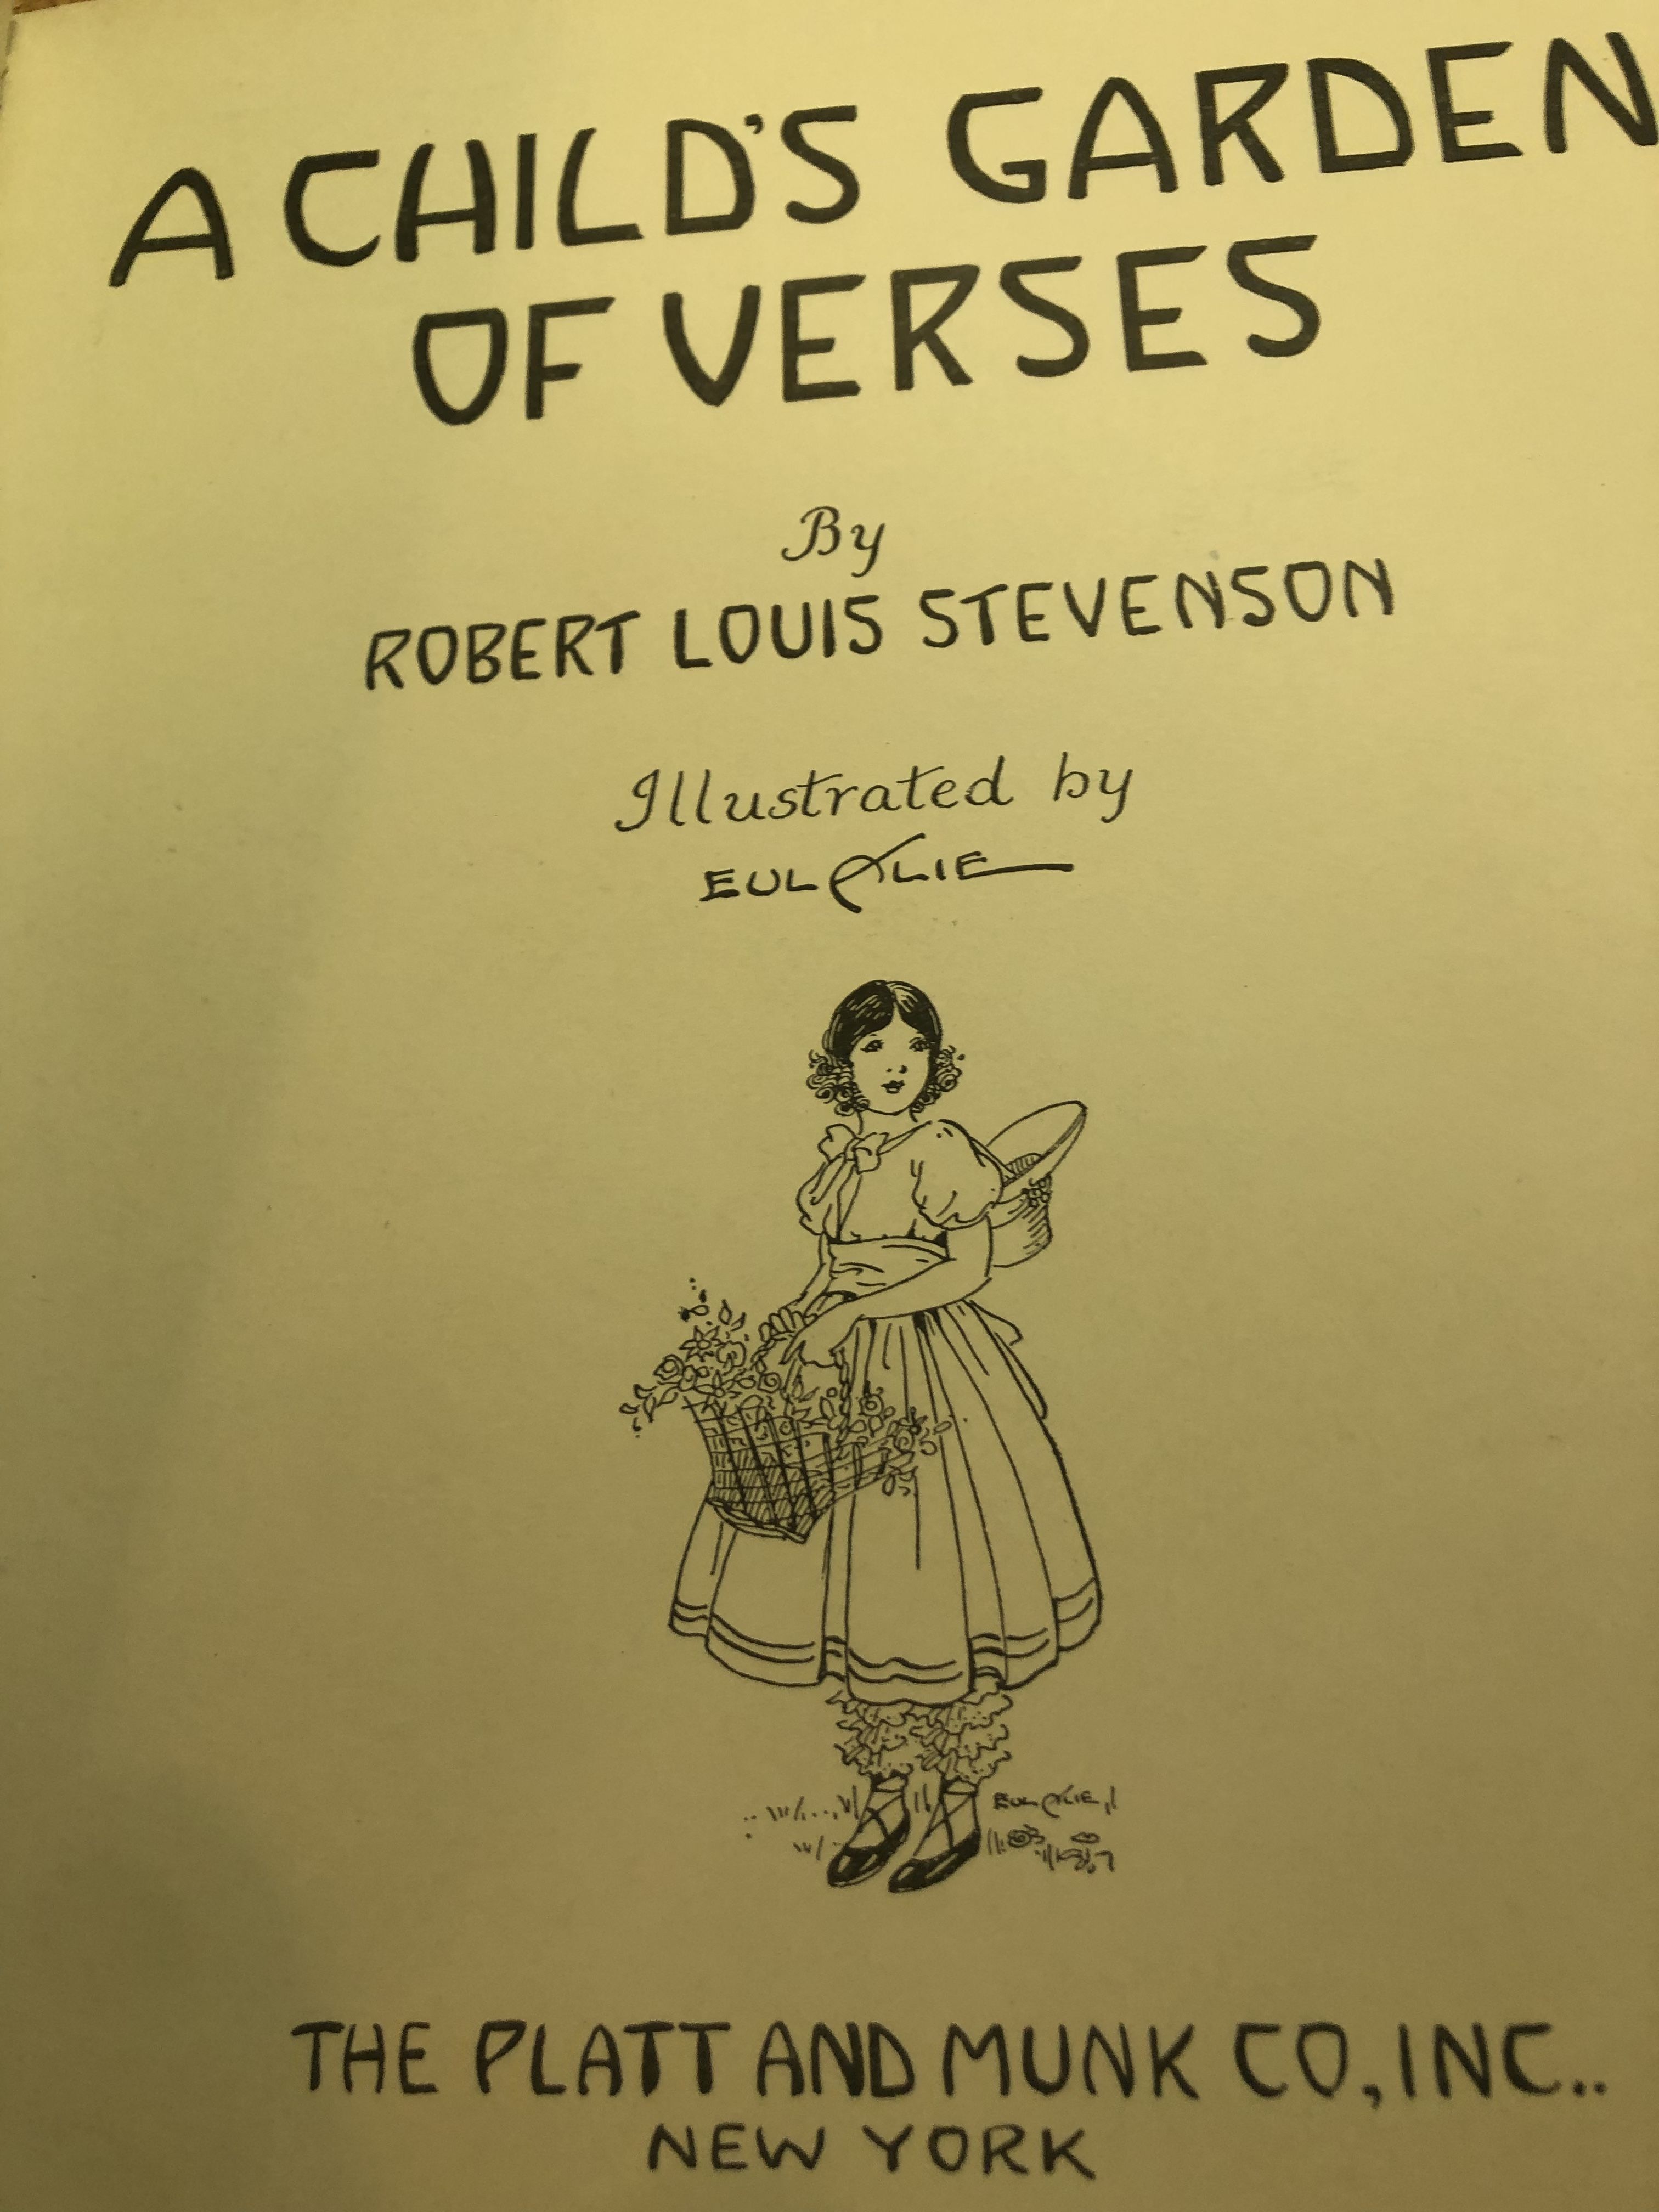 A Child's Garden of Verses, Robert Louis Stevenson, 1929